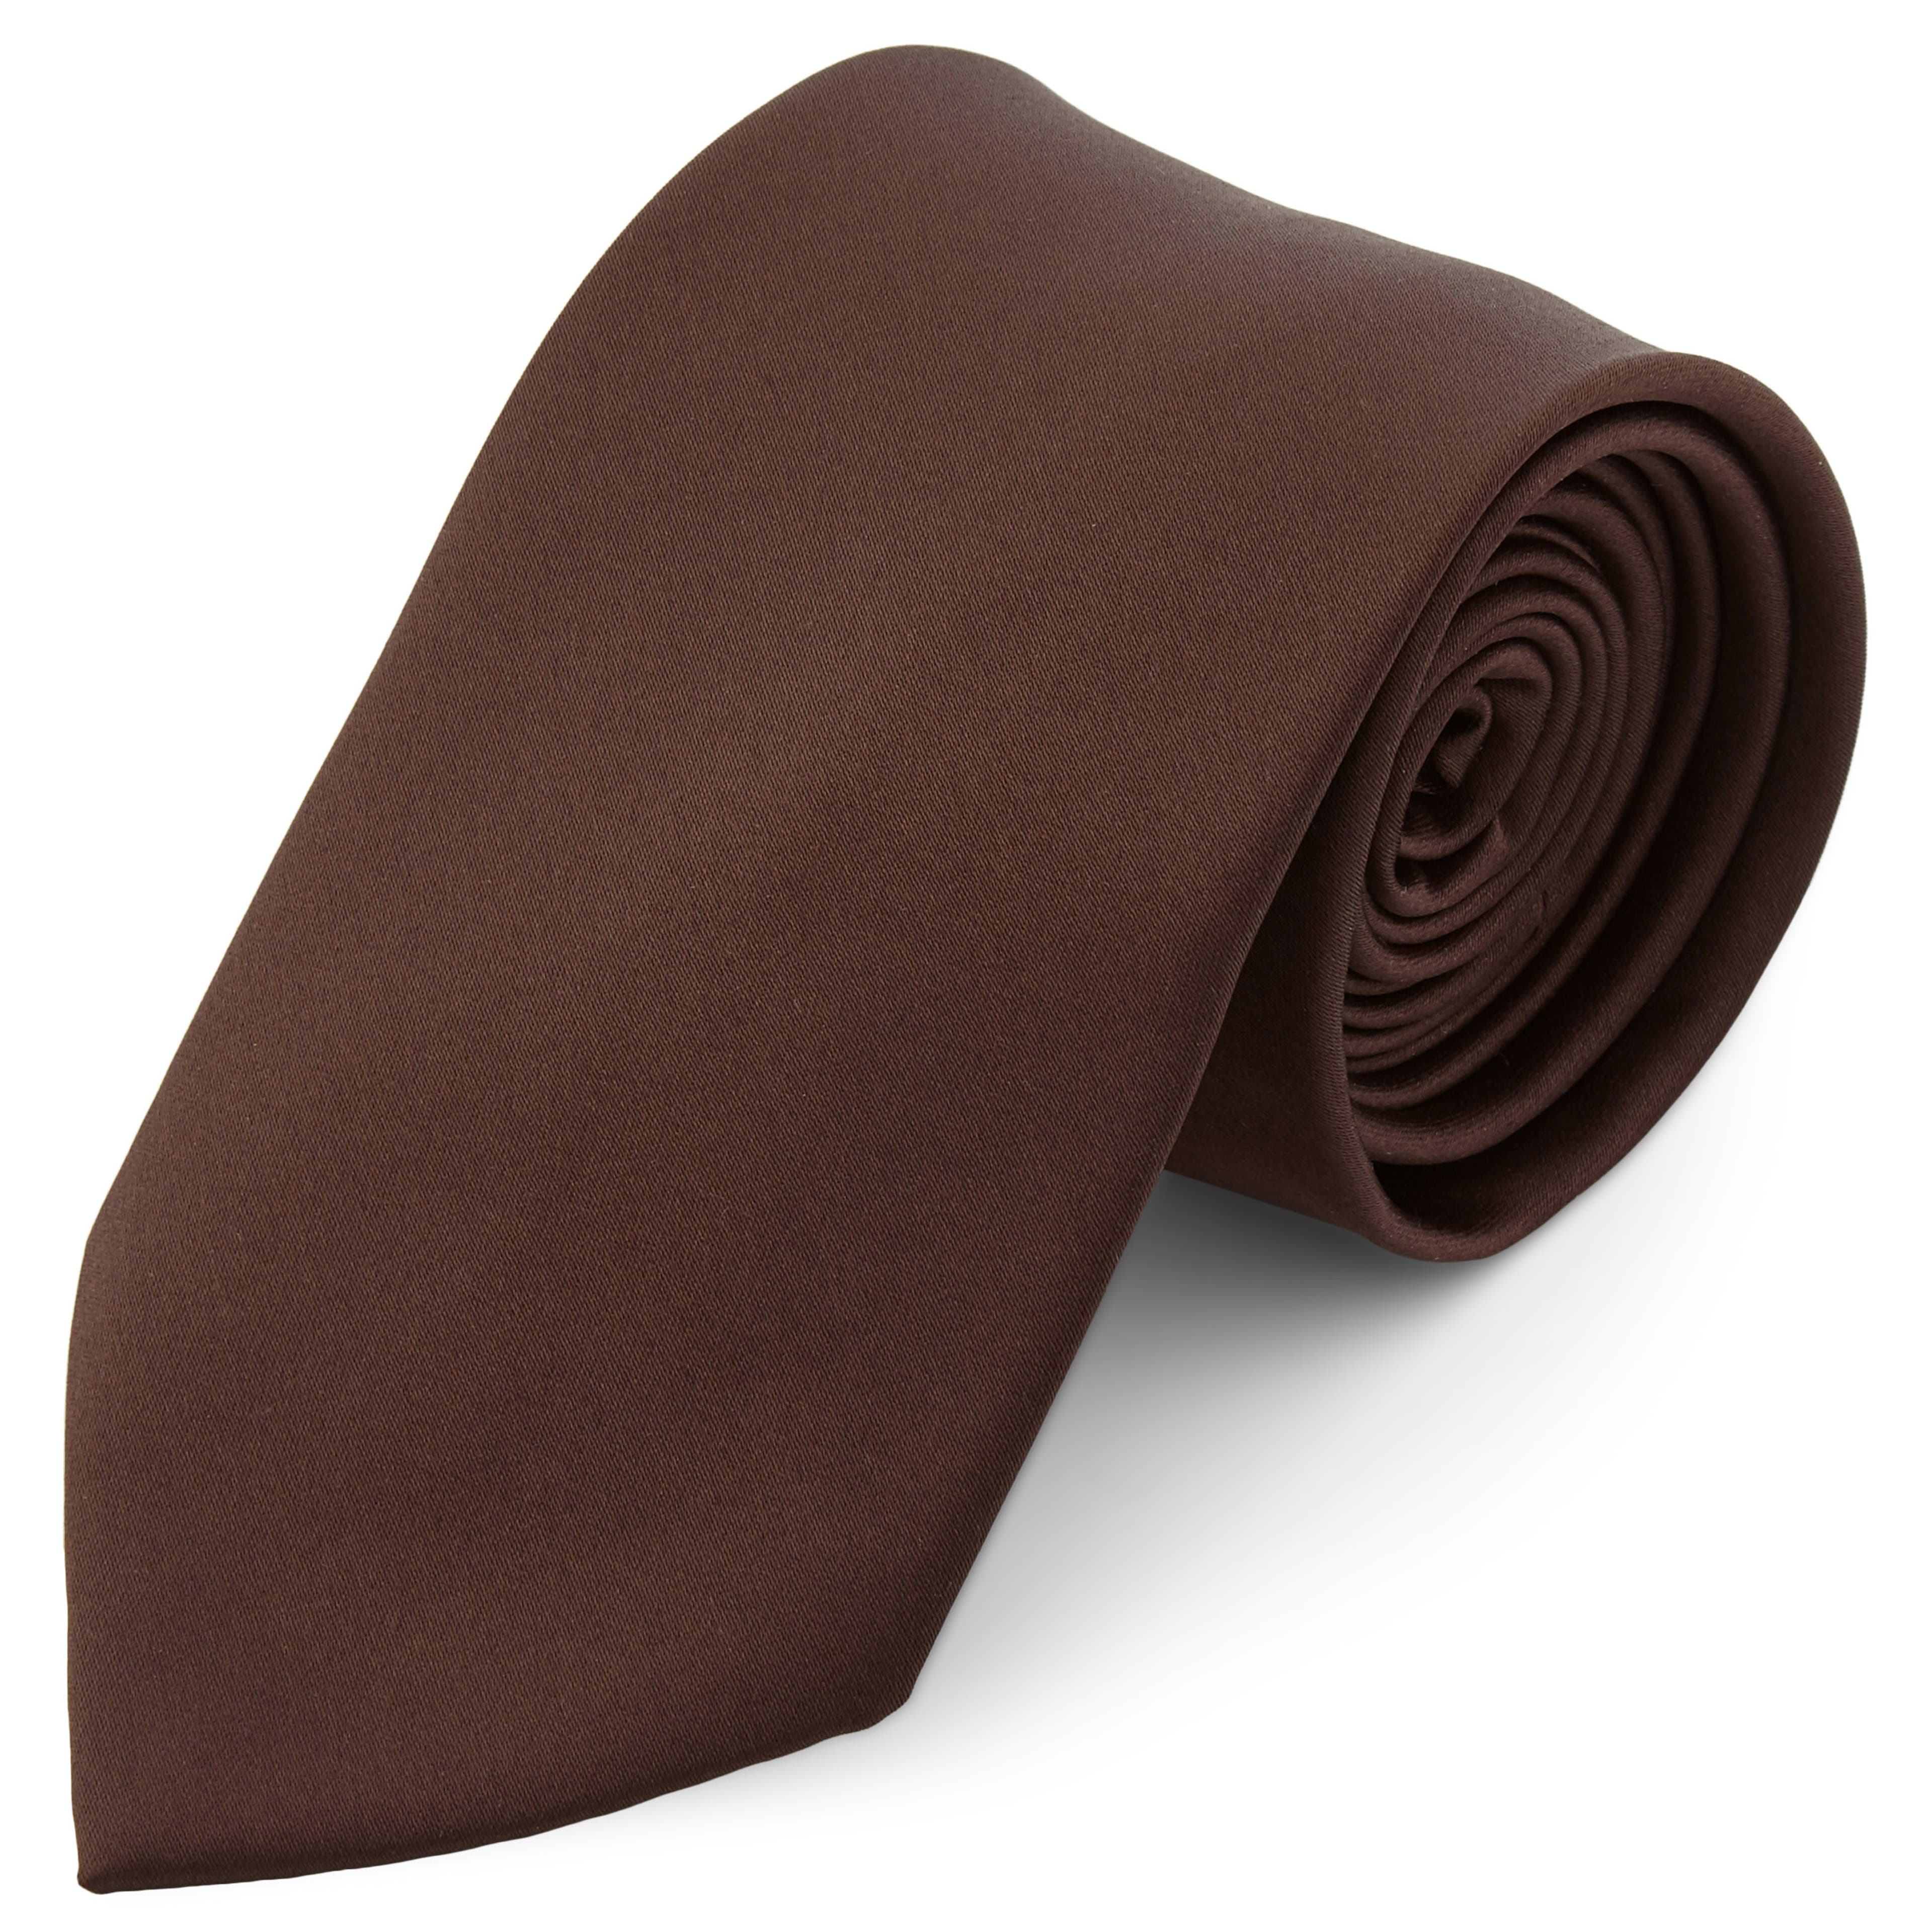 Corbata básica extralarga marrón oscuro de 8 cm